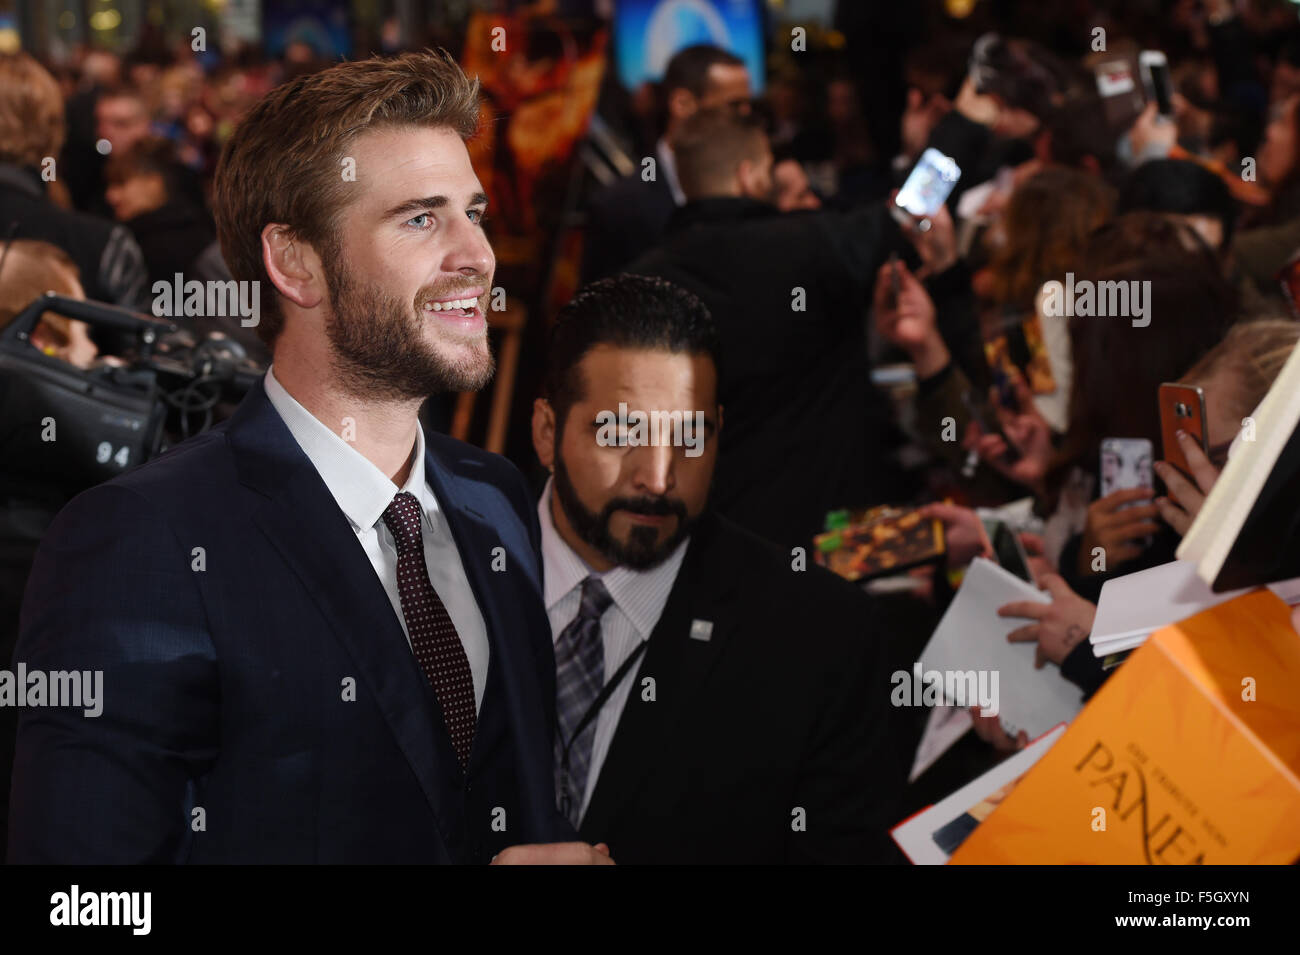 Berlin, Allemagne. 4ème Nov, 2015. Liam Hemsworth acteur arrive et offre aux fans des autographes dans le monde de la premeiere Hunger Games : Clarak Partie 2 au Cinestar cinéma de Berlin, Allemagne, 4 novembre 2015. Photo : JENS KALAENE/DPA/Alamy Live News Banque D'Images